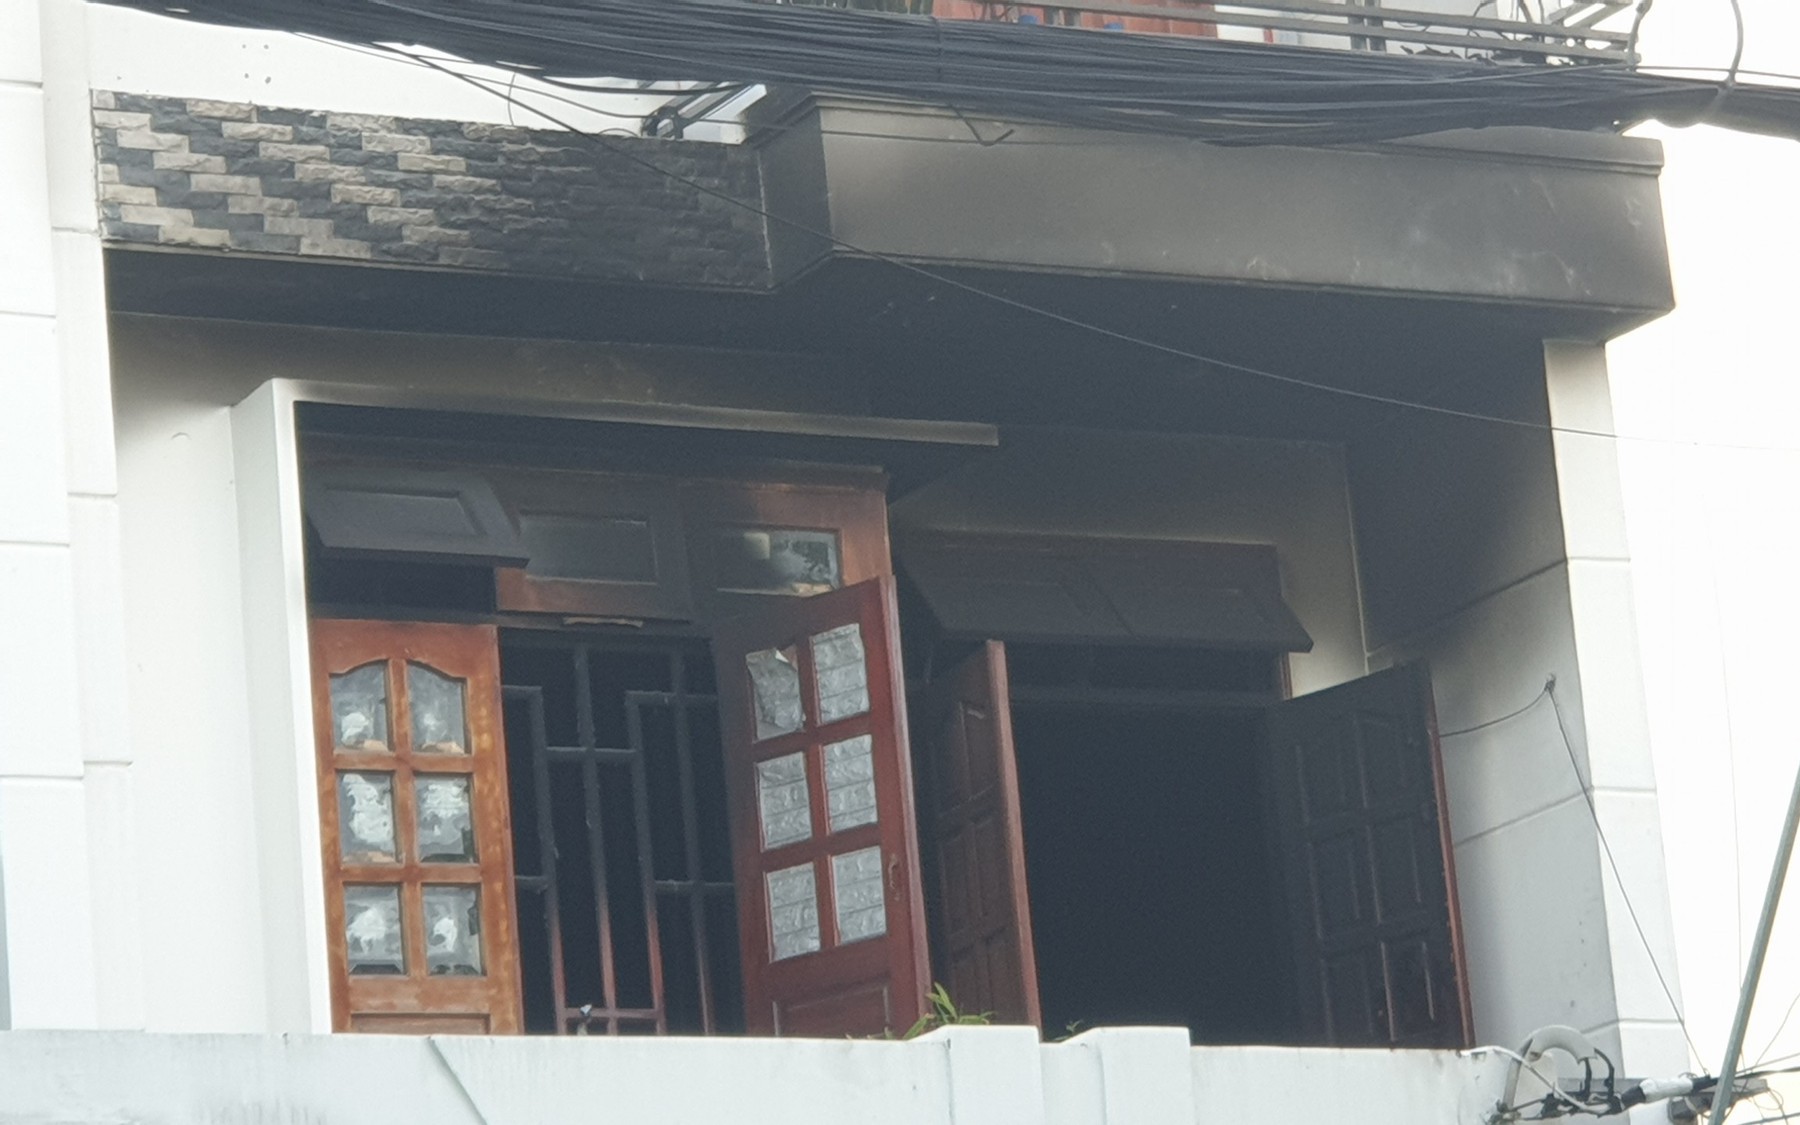 Vụ cháy nhà trọ khiến 1 người phụ nữ tử vong: Có dấu hiệu cố tình phóng hỏa giết người